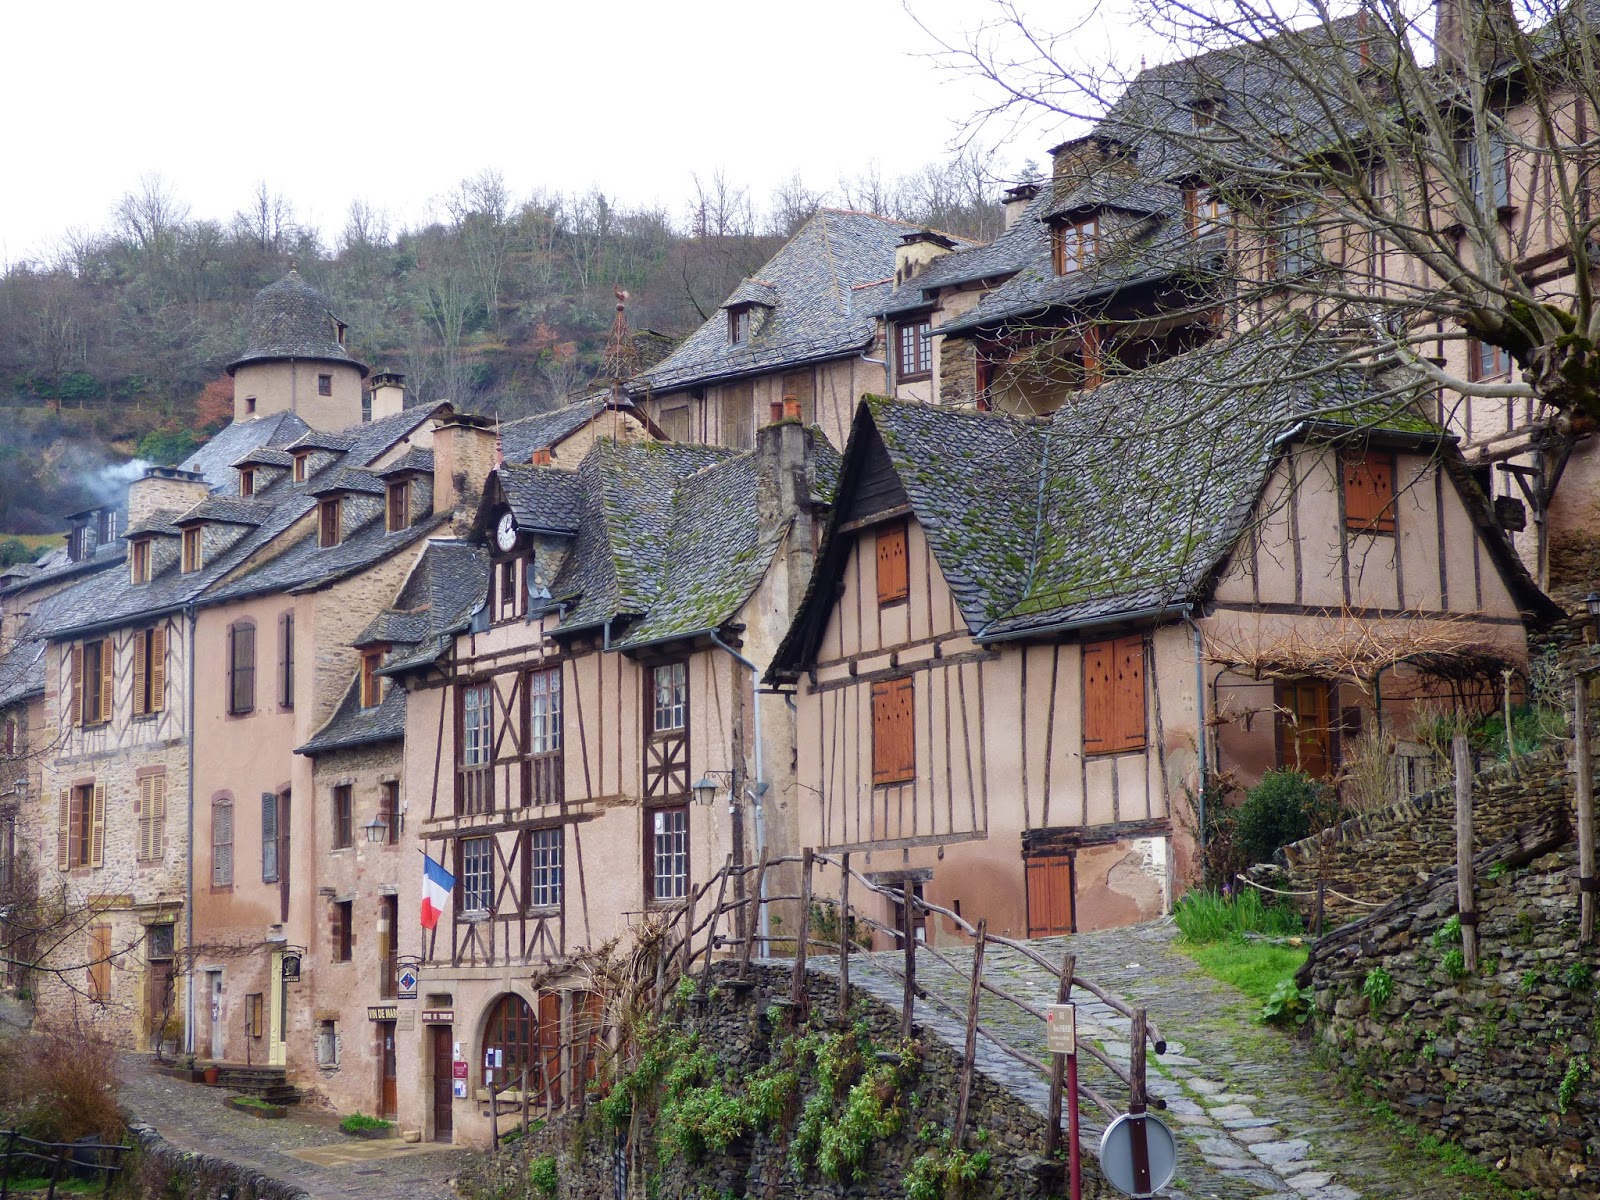 Pueblos y pueblos medievales!! Alucinantes - Blogs de Francia - CONQUES, El pueblo mas bonito de Francia. (5)